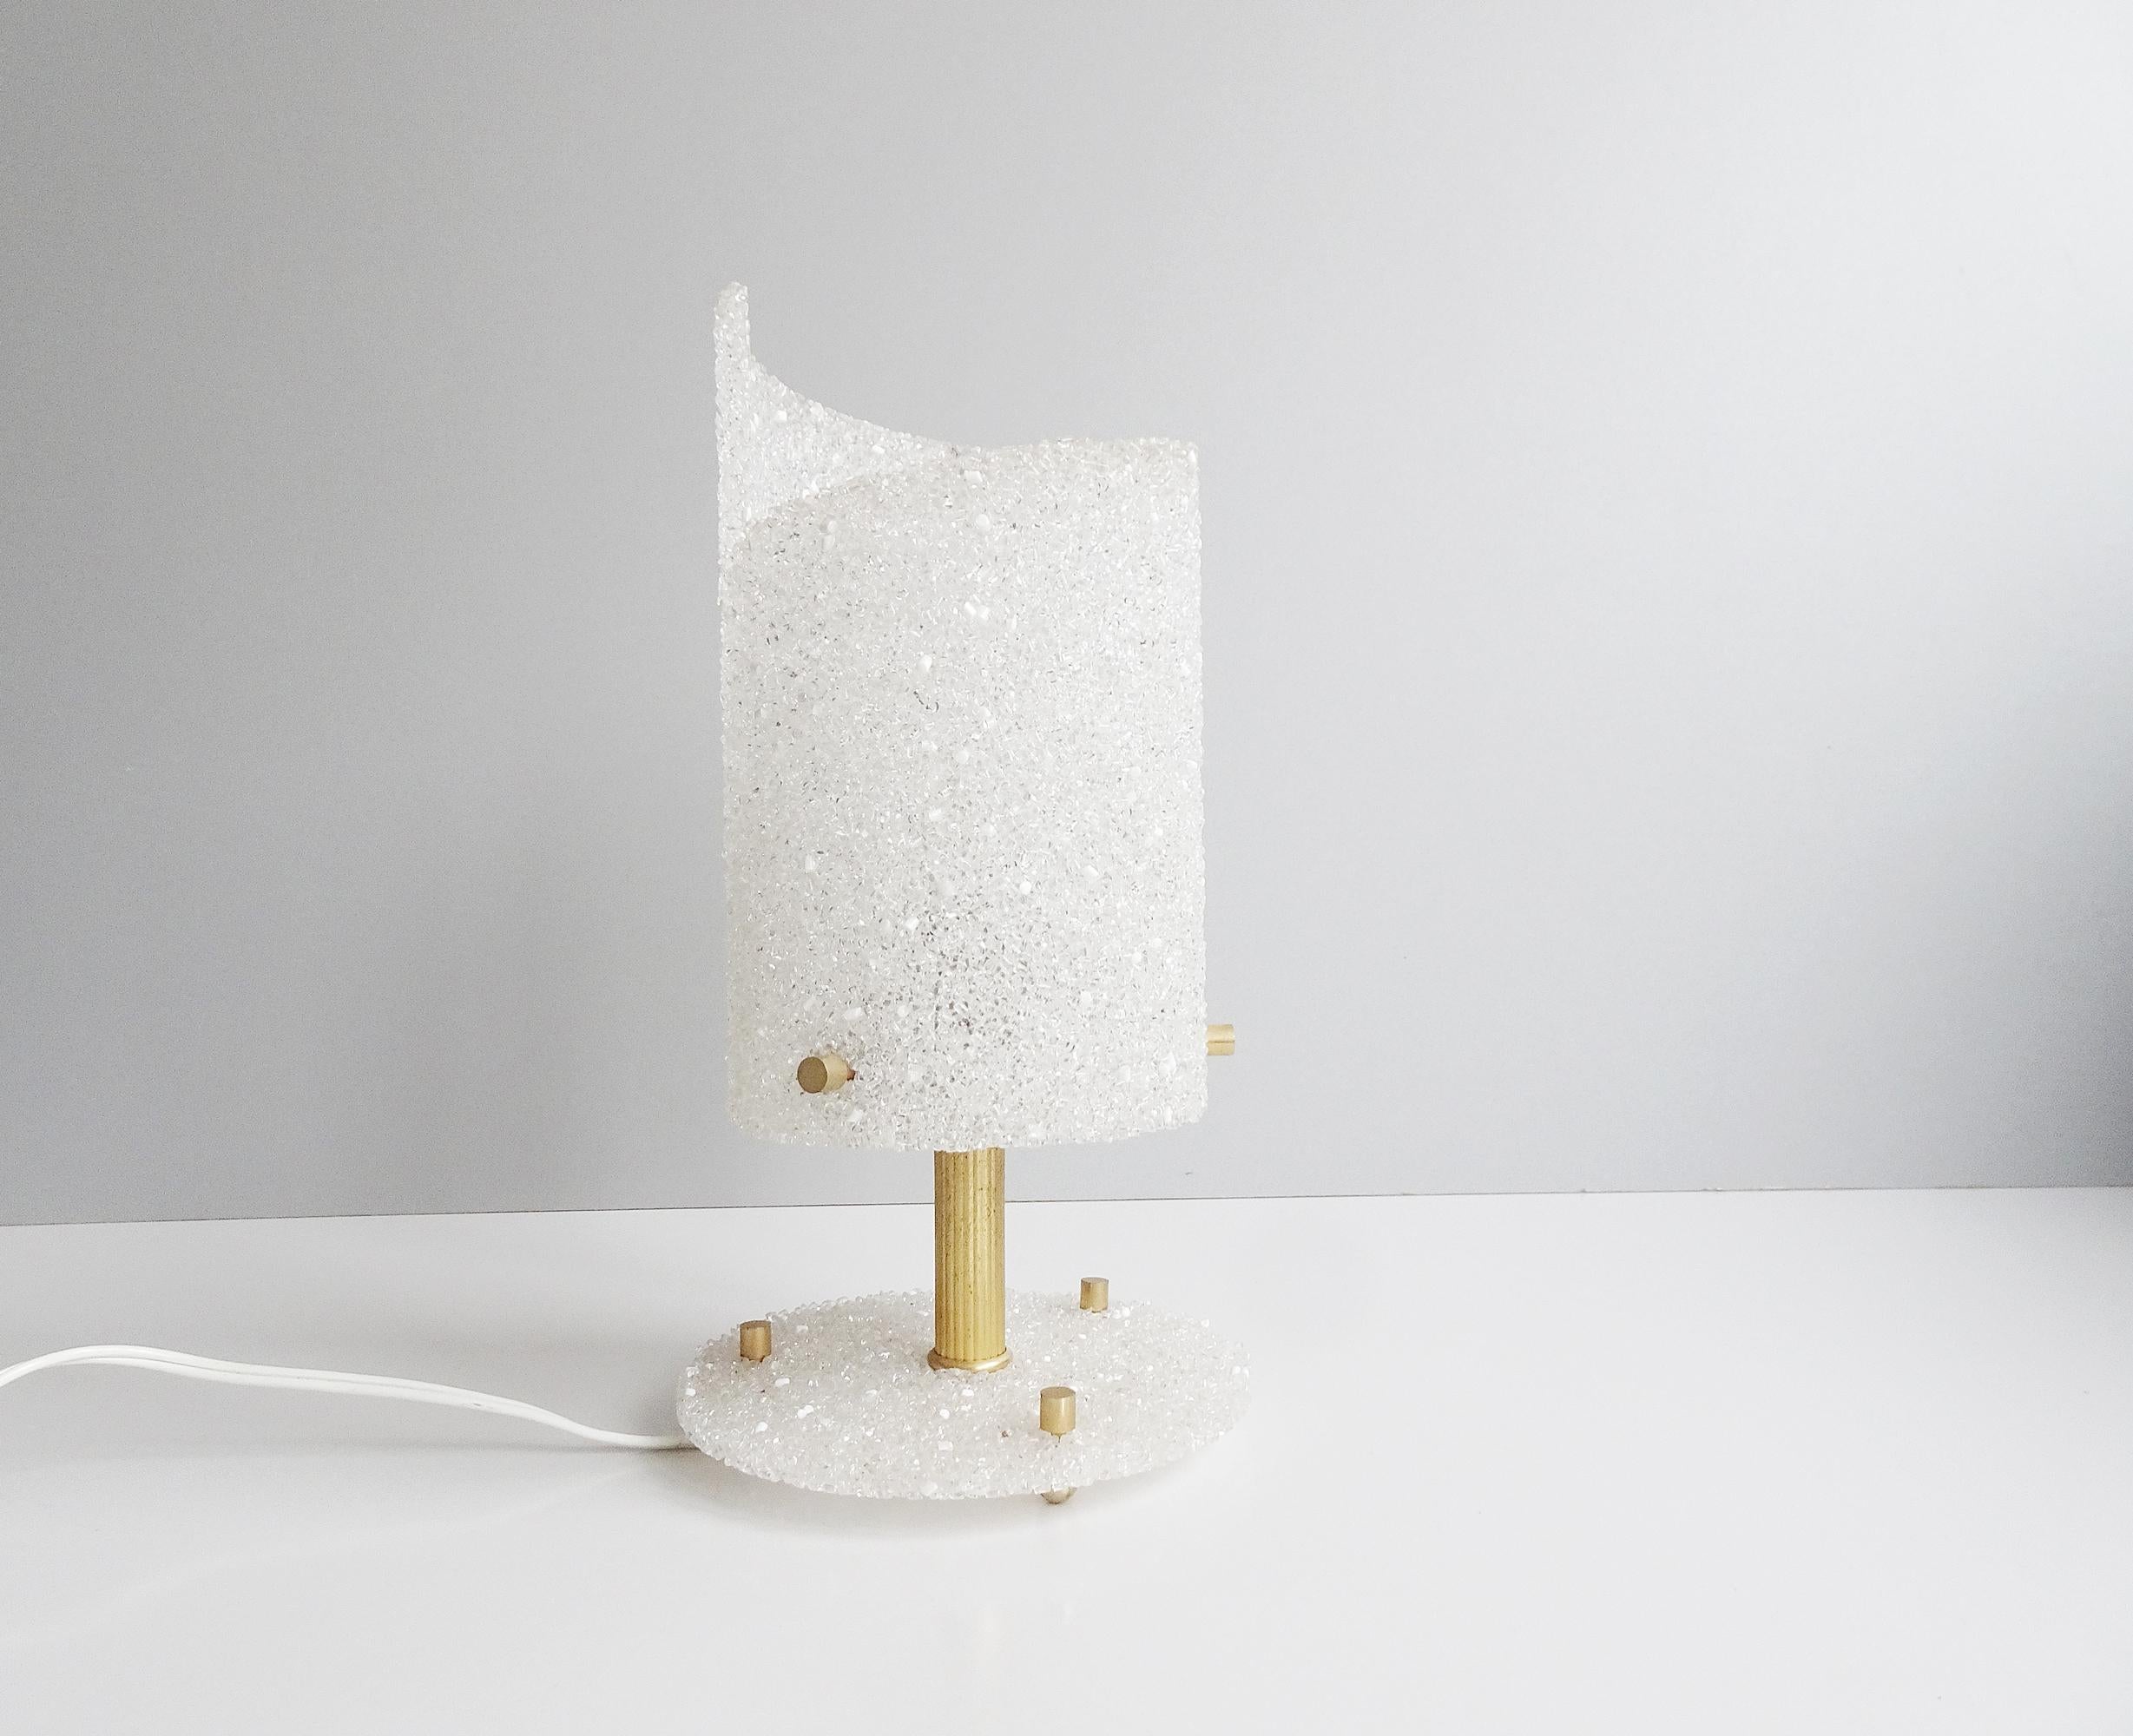 Cette lampe française est une lampe de table noble des années 1960. Design galbé en résine avec des détails dorés en métal. Les granules créent un grand effet pailleté selon l'incidence de la lumière, ainsi qu'un éclat particulièrement